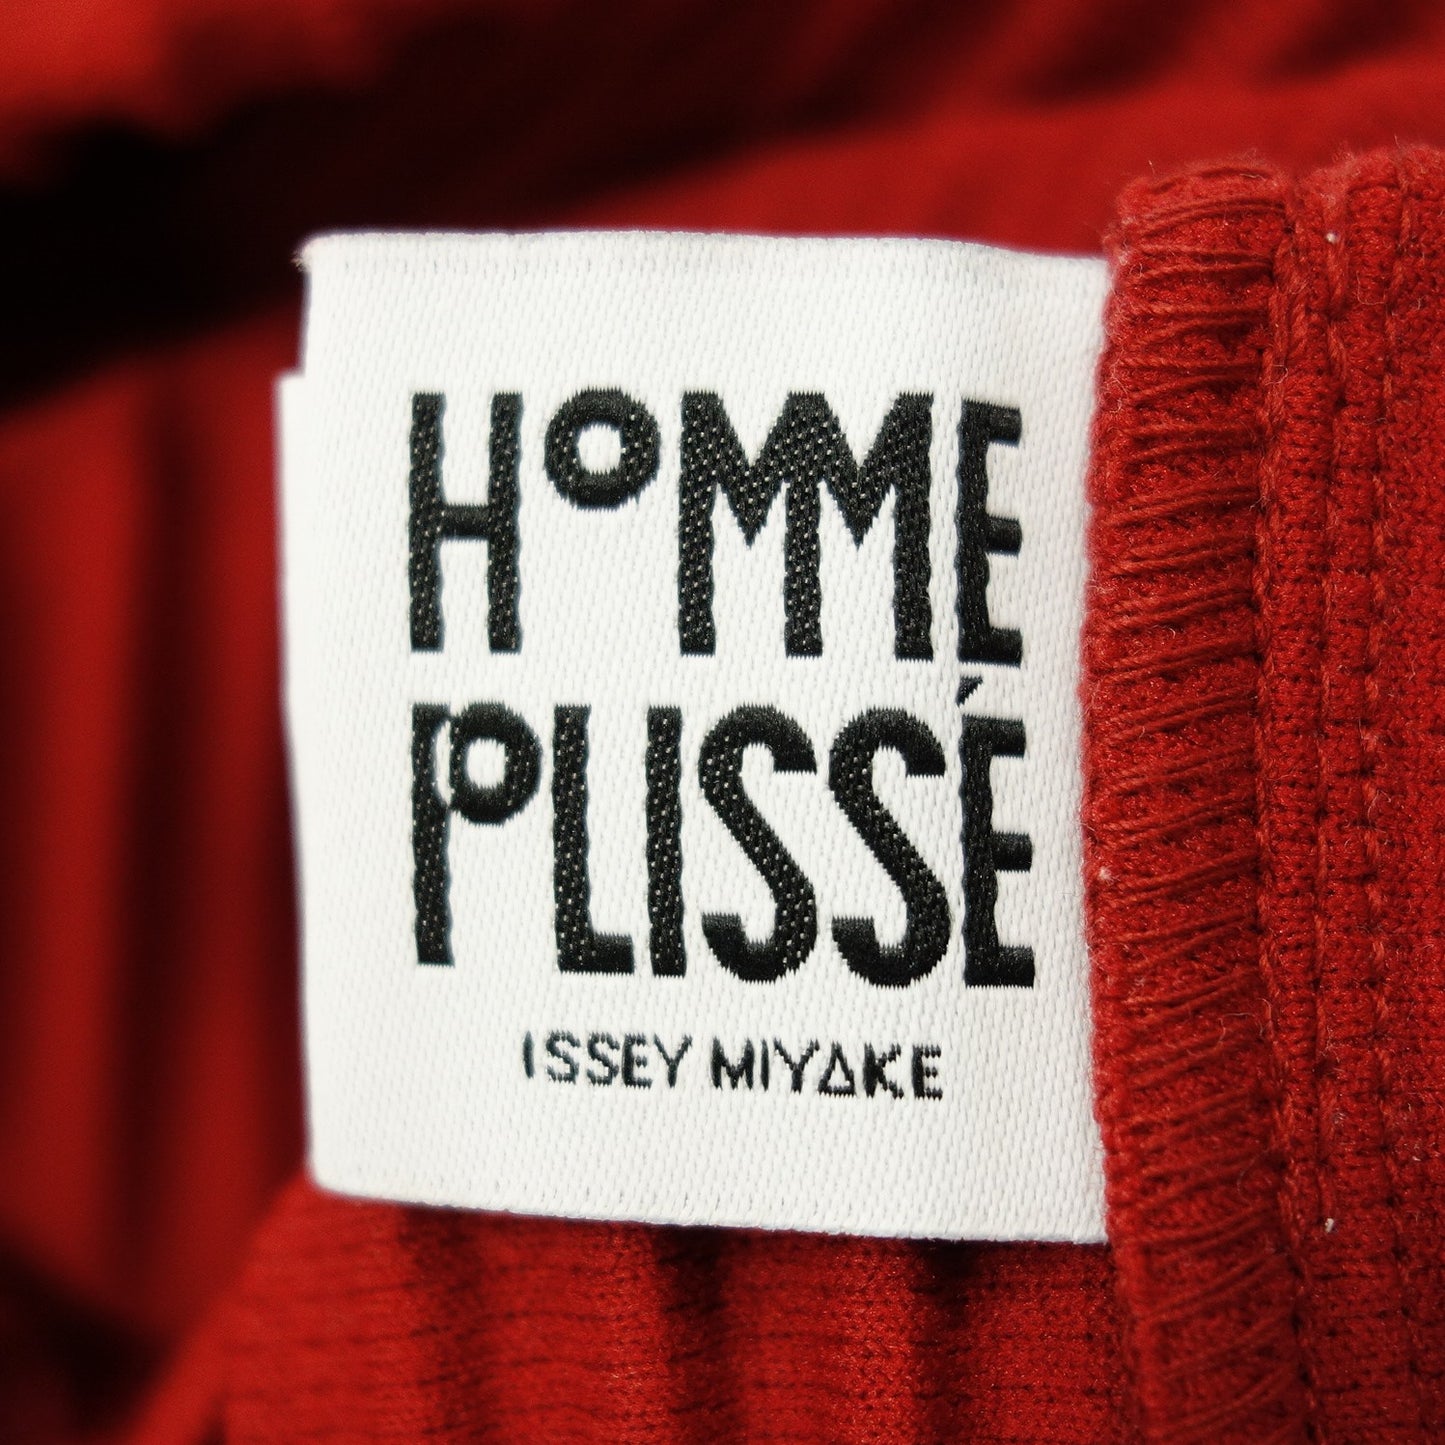 品相良好◆Issey Miyake HOMME PLISSE 长袖 T 恤剪裁和缝制褶皱 HP93JK201 双色男式红 x 蓝色 ISSEY MIYAKE HOMME PLISSE [AFB29] 